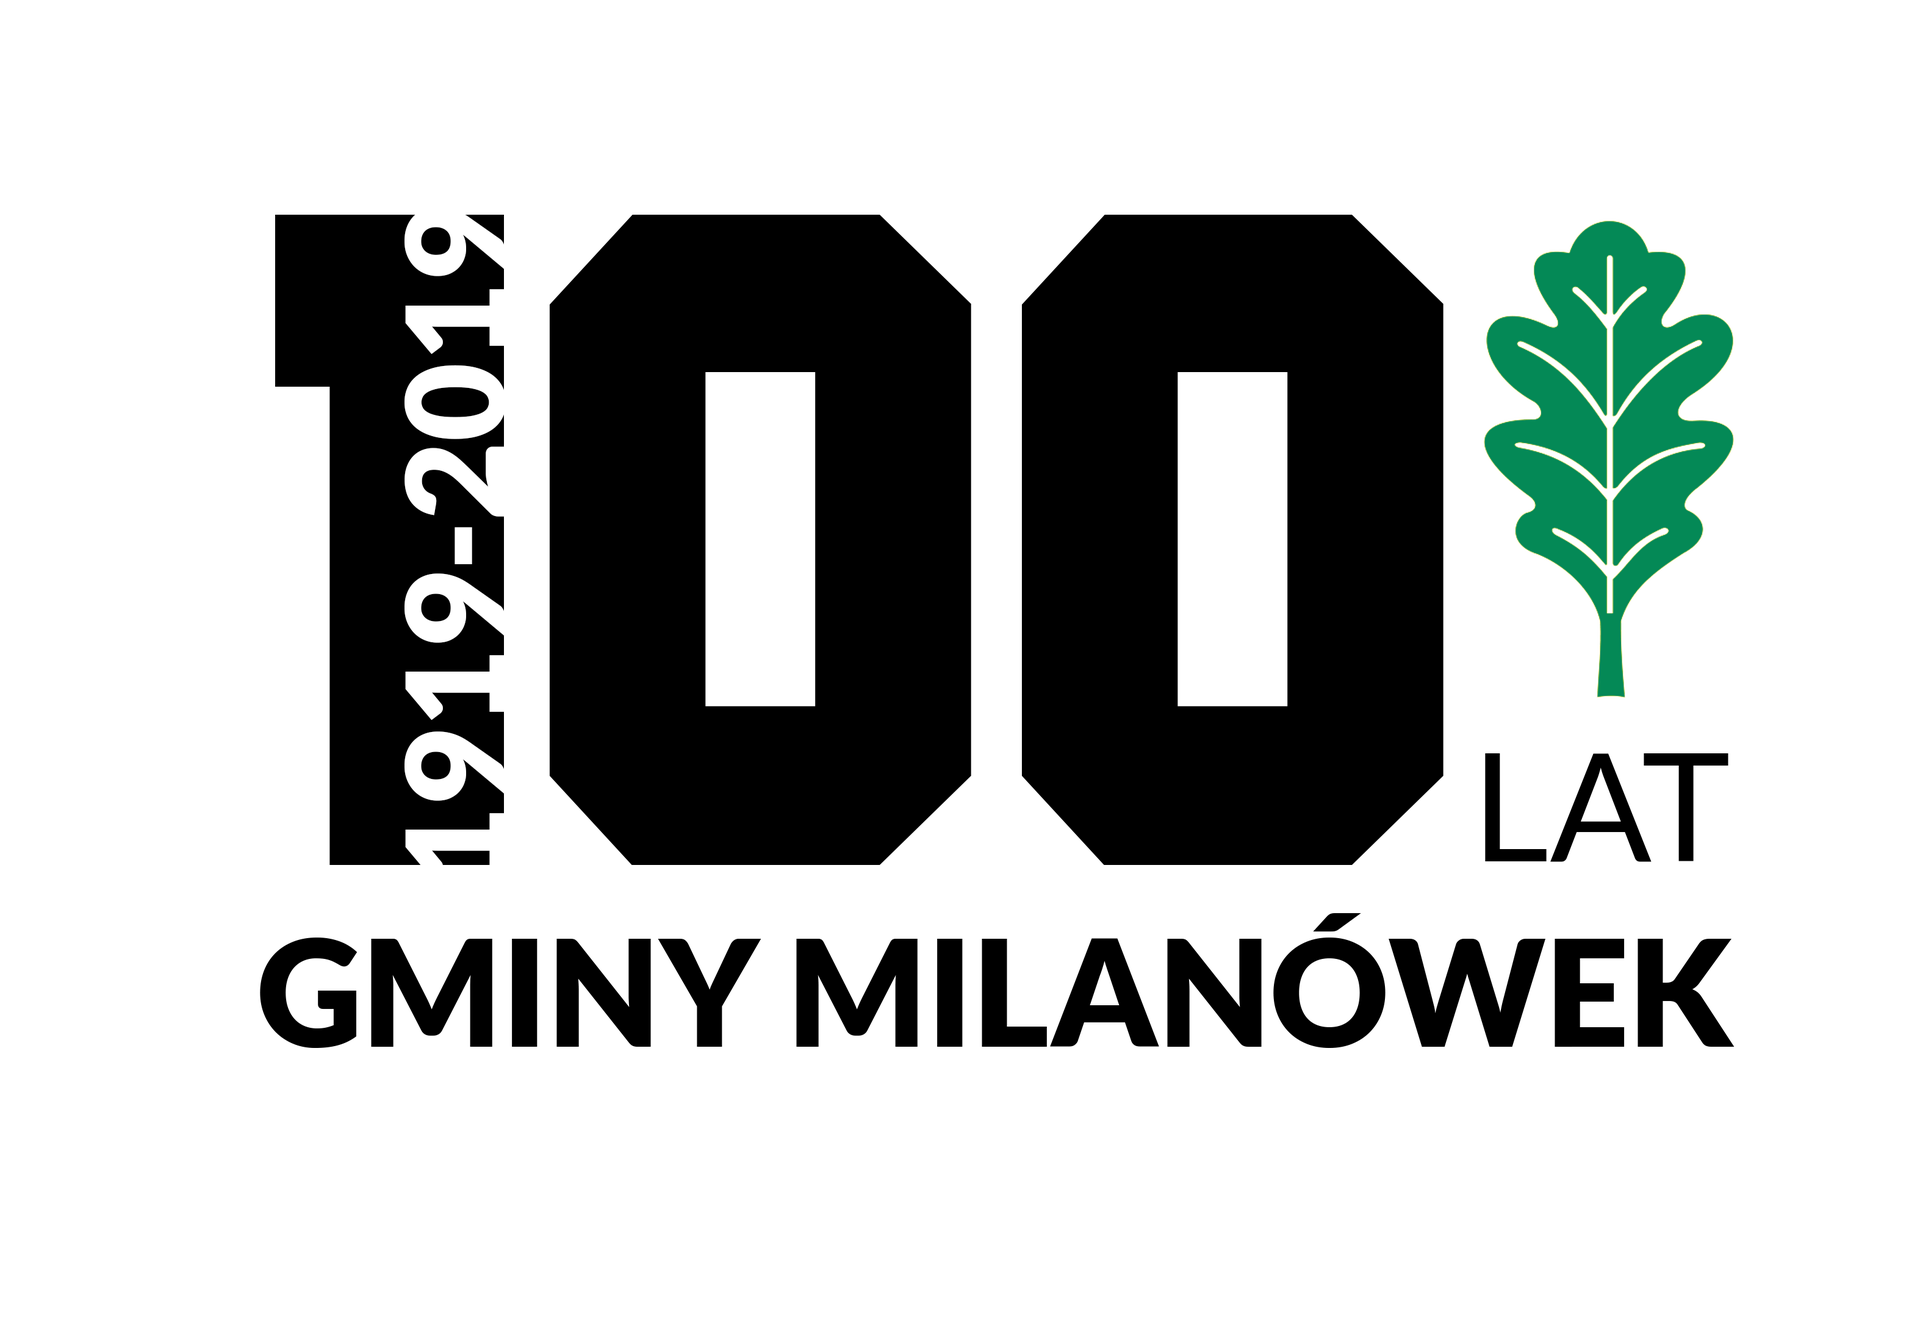 Logo 100-lecia Gminy Milanówek